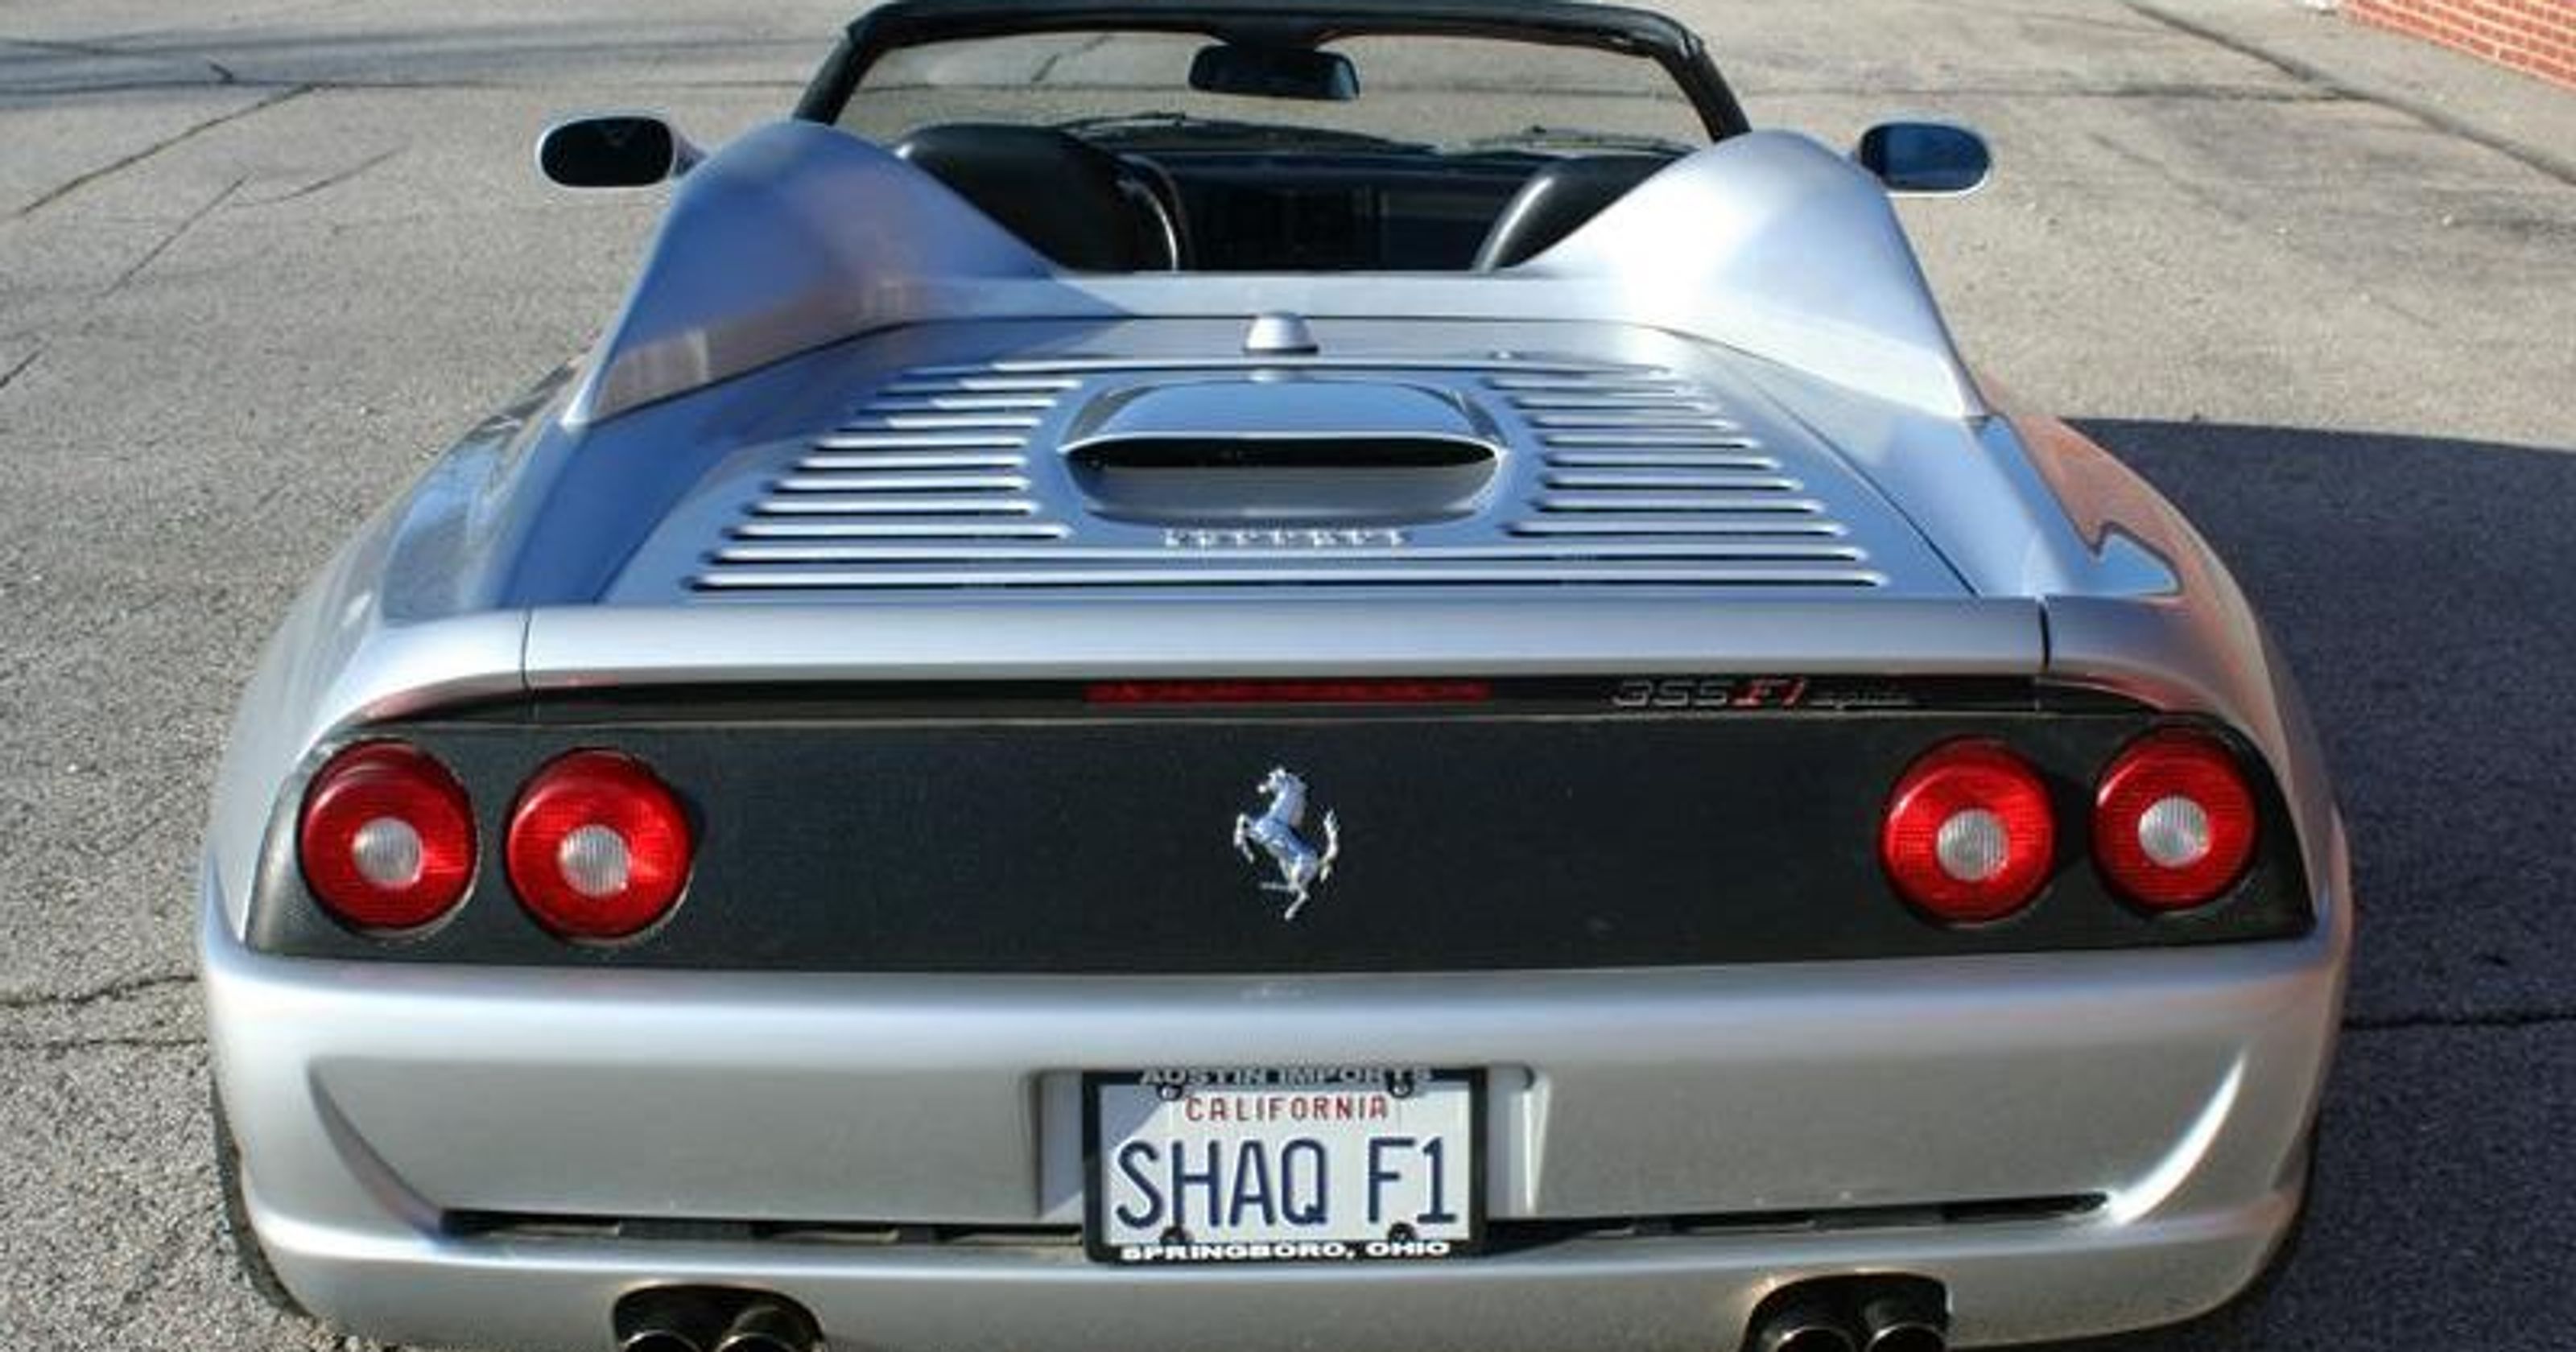 Shaq's Ferrari F1 Spider